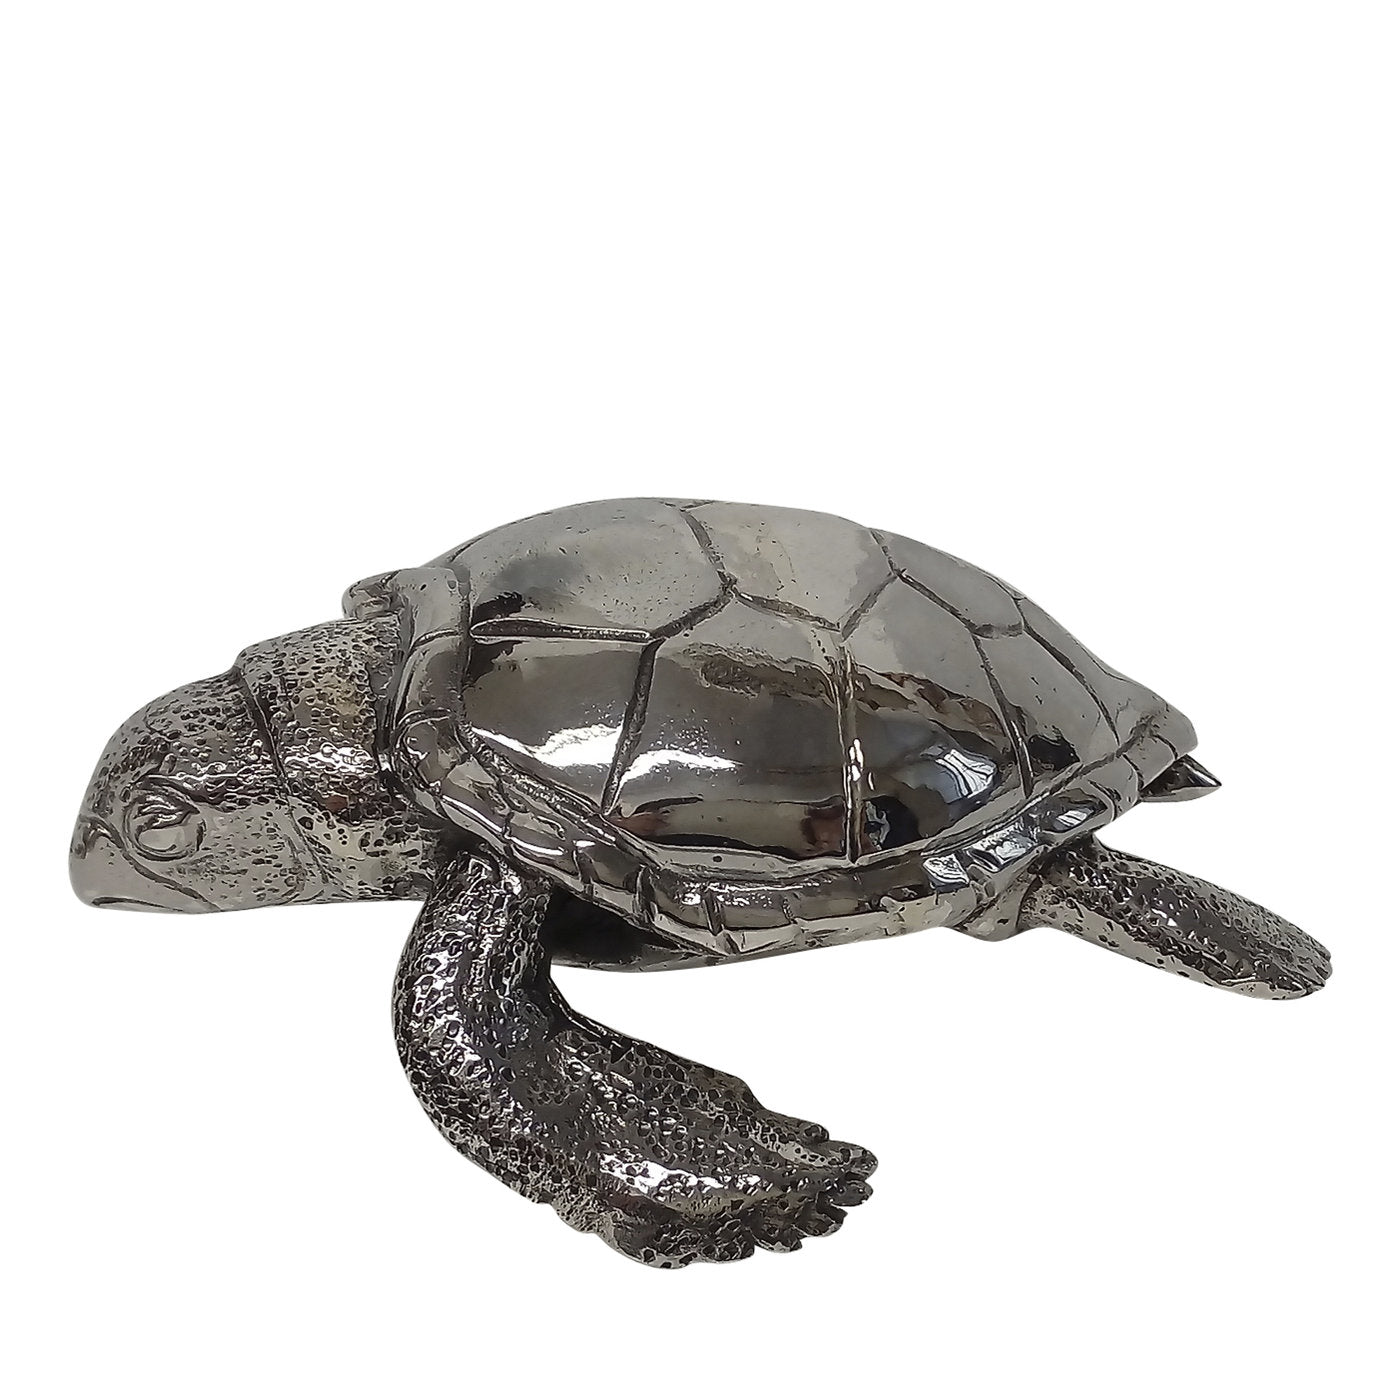 Sea Turtle Ornament - Main view